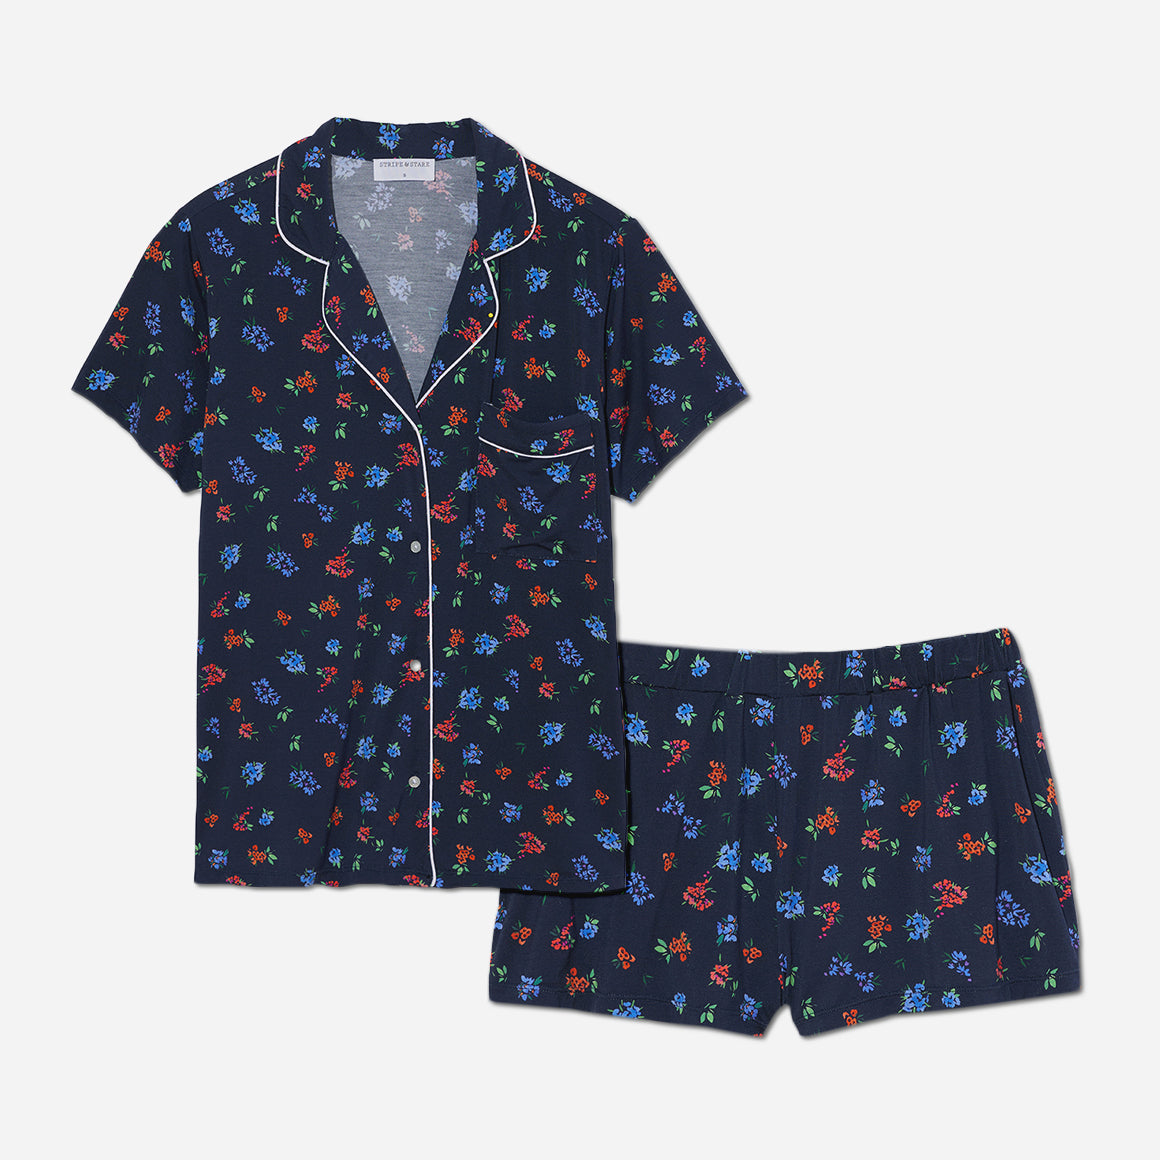 Ultimate Tencel Modal Pajamas, Pajama Sets & Sleepwear